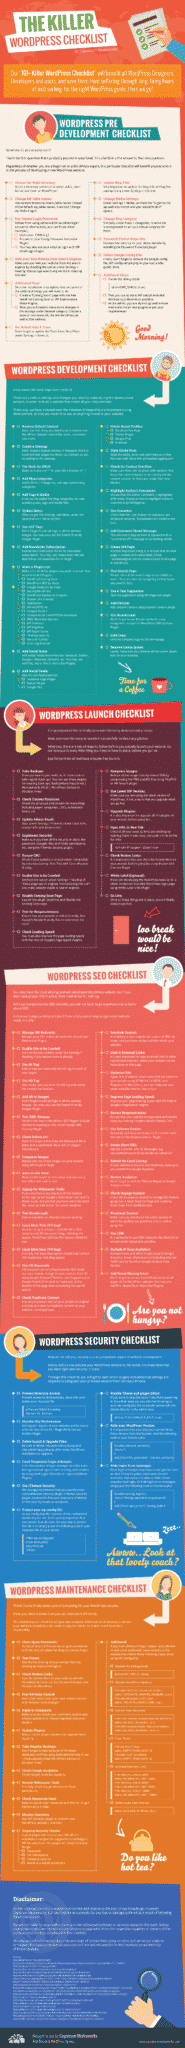 wordpress-checklist-infographic